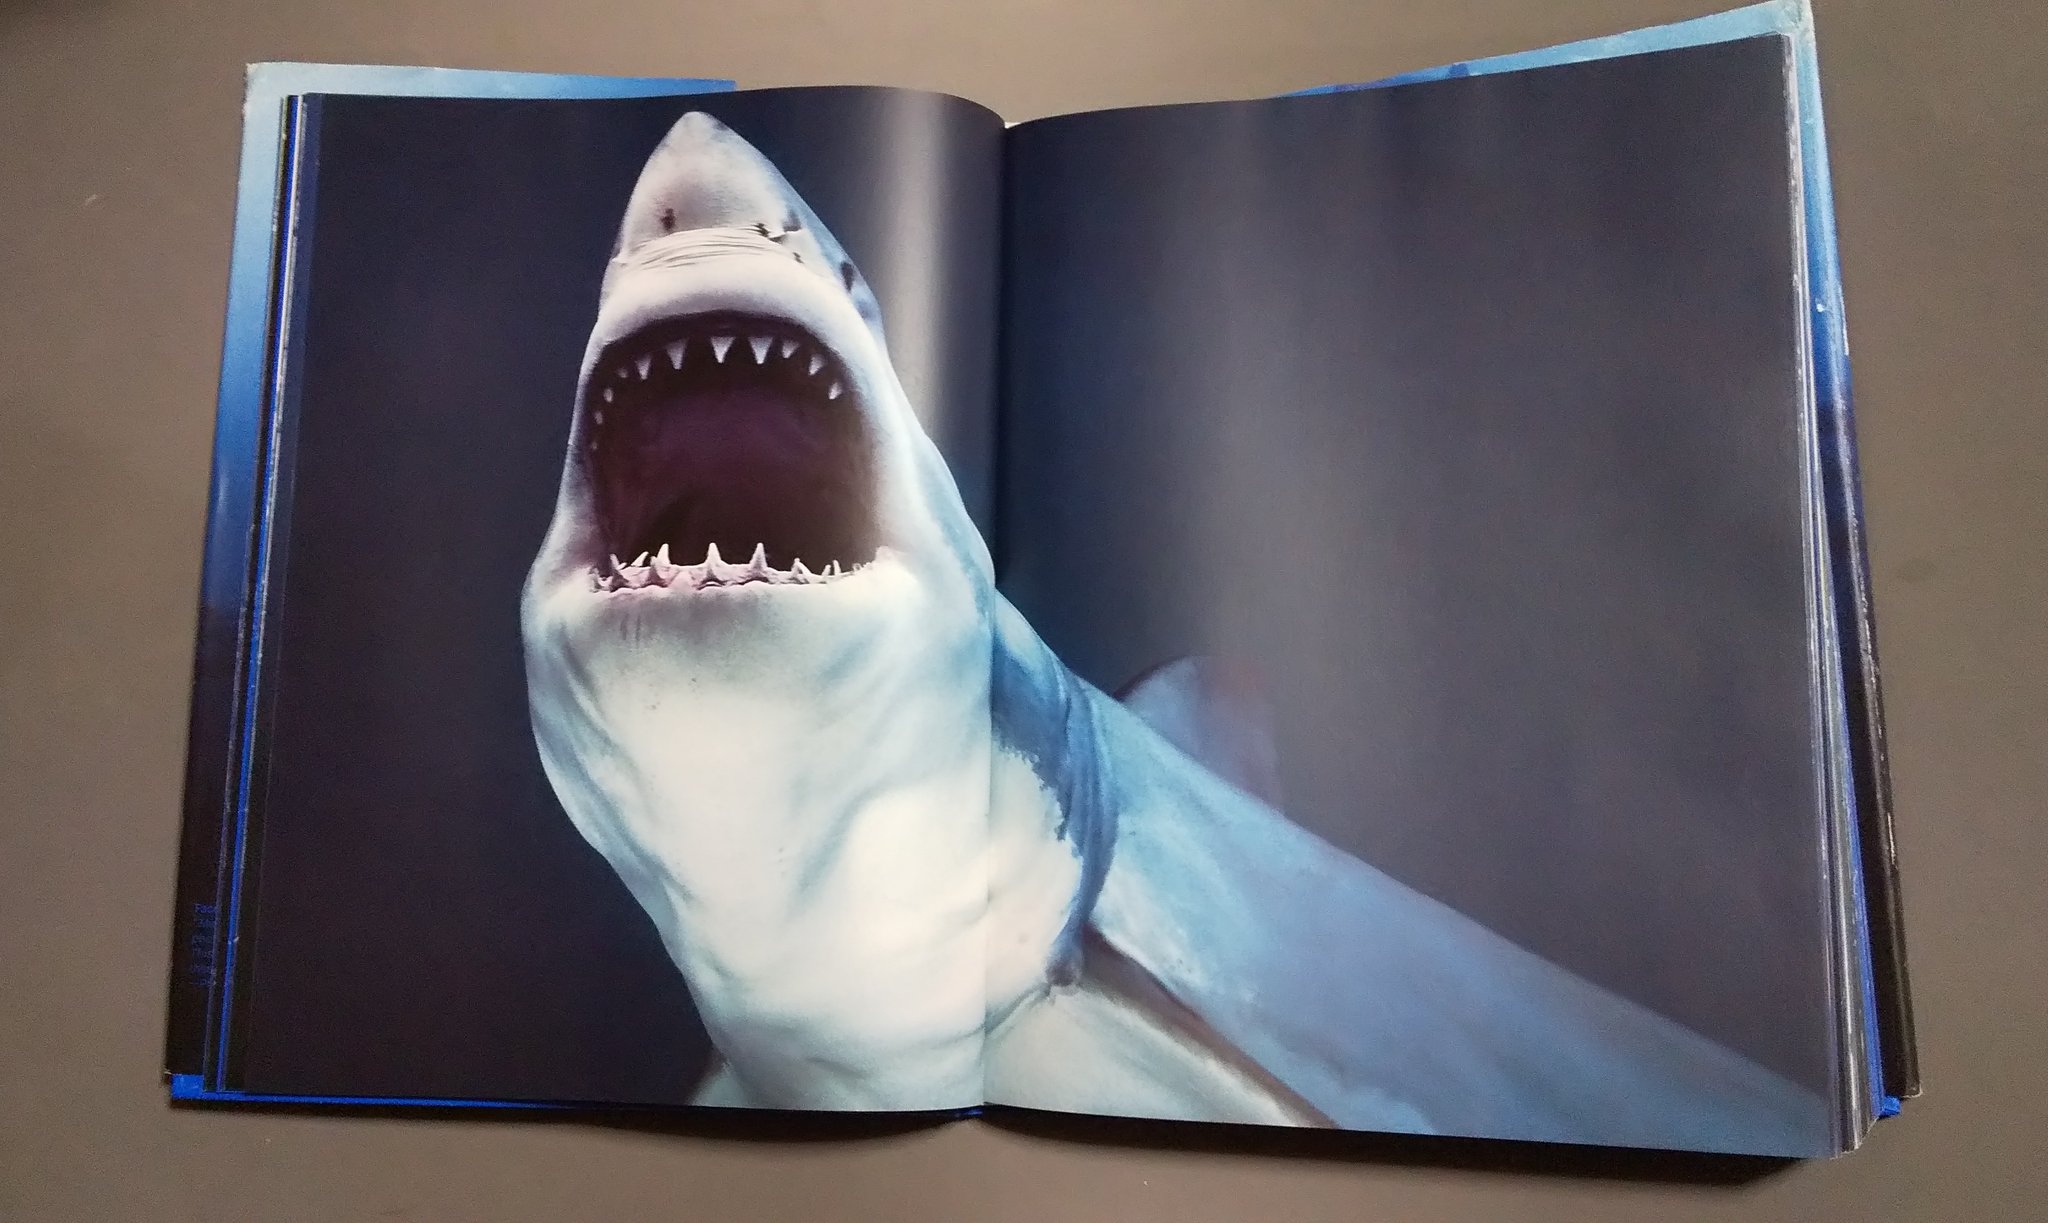 サメ田氏 On Twitter ドイツのタッシェン Taschen 社 主に美術や建築 デザインの本を扱う会社が出したサメ の写真集 図鑑でなく写真集なのでサメの見せ方 魅せ方 の参考になります サメの絵を描く方は絶対持っておかなければならない一冊です Https T Co